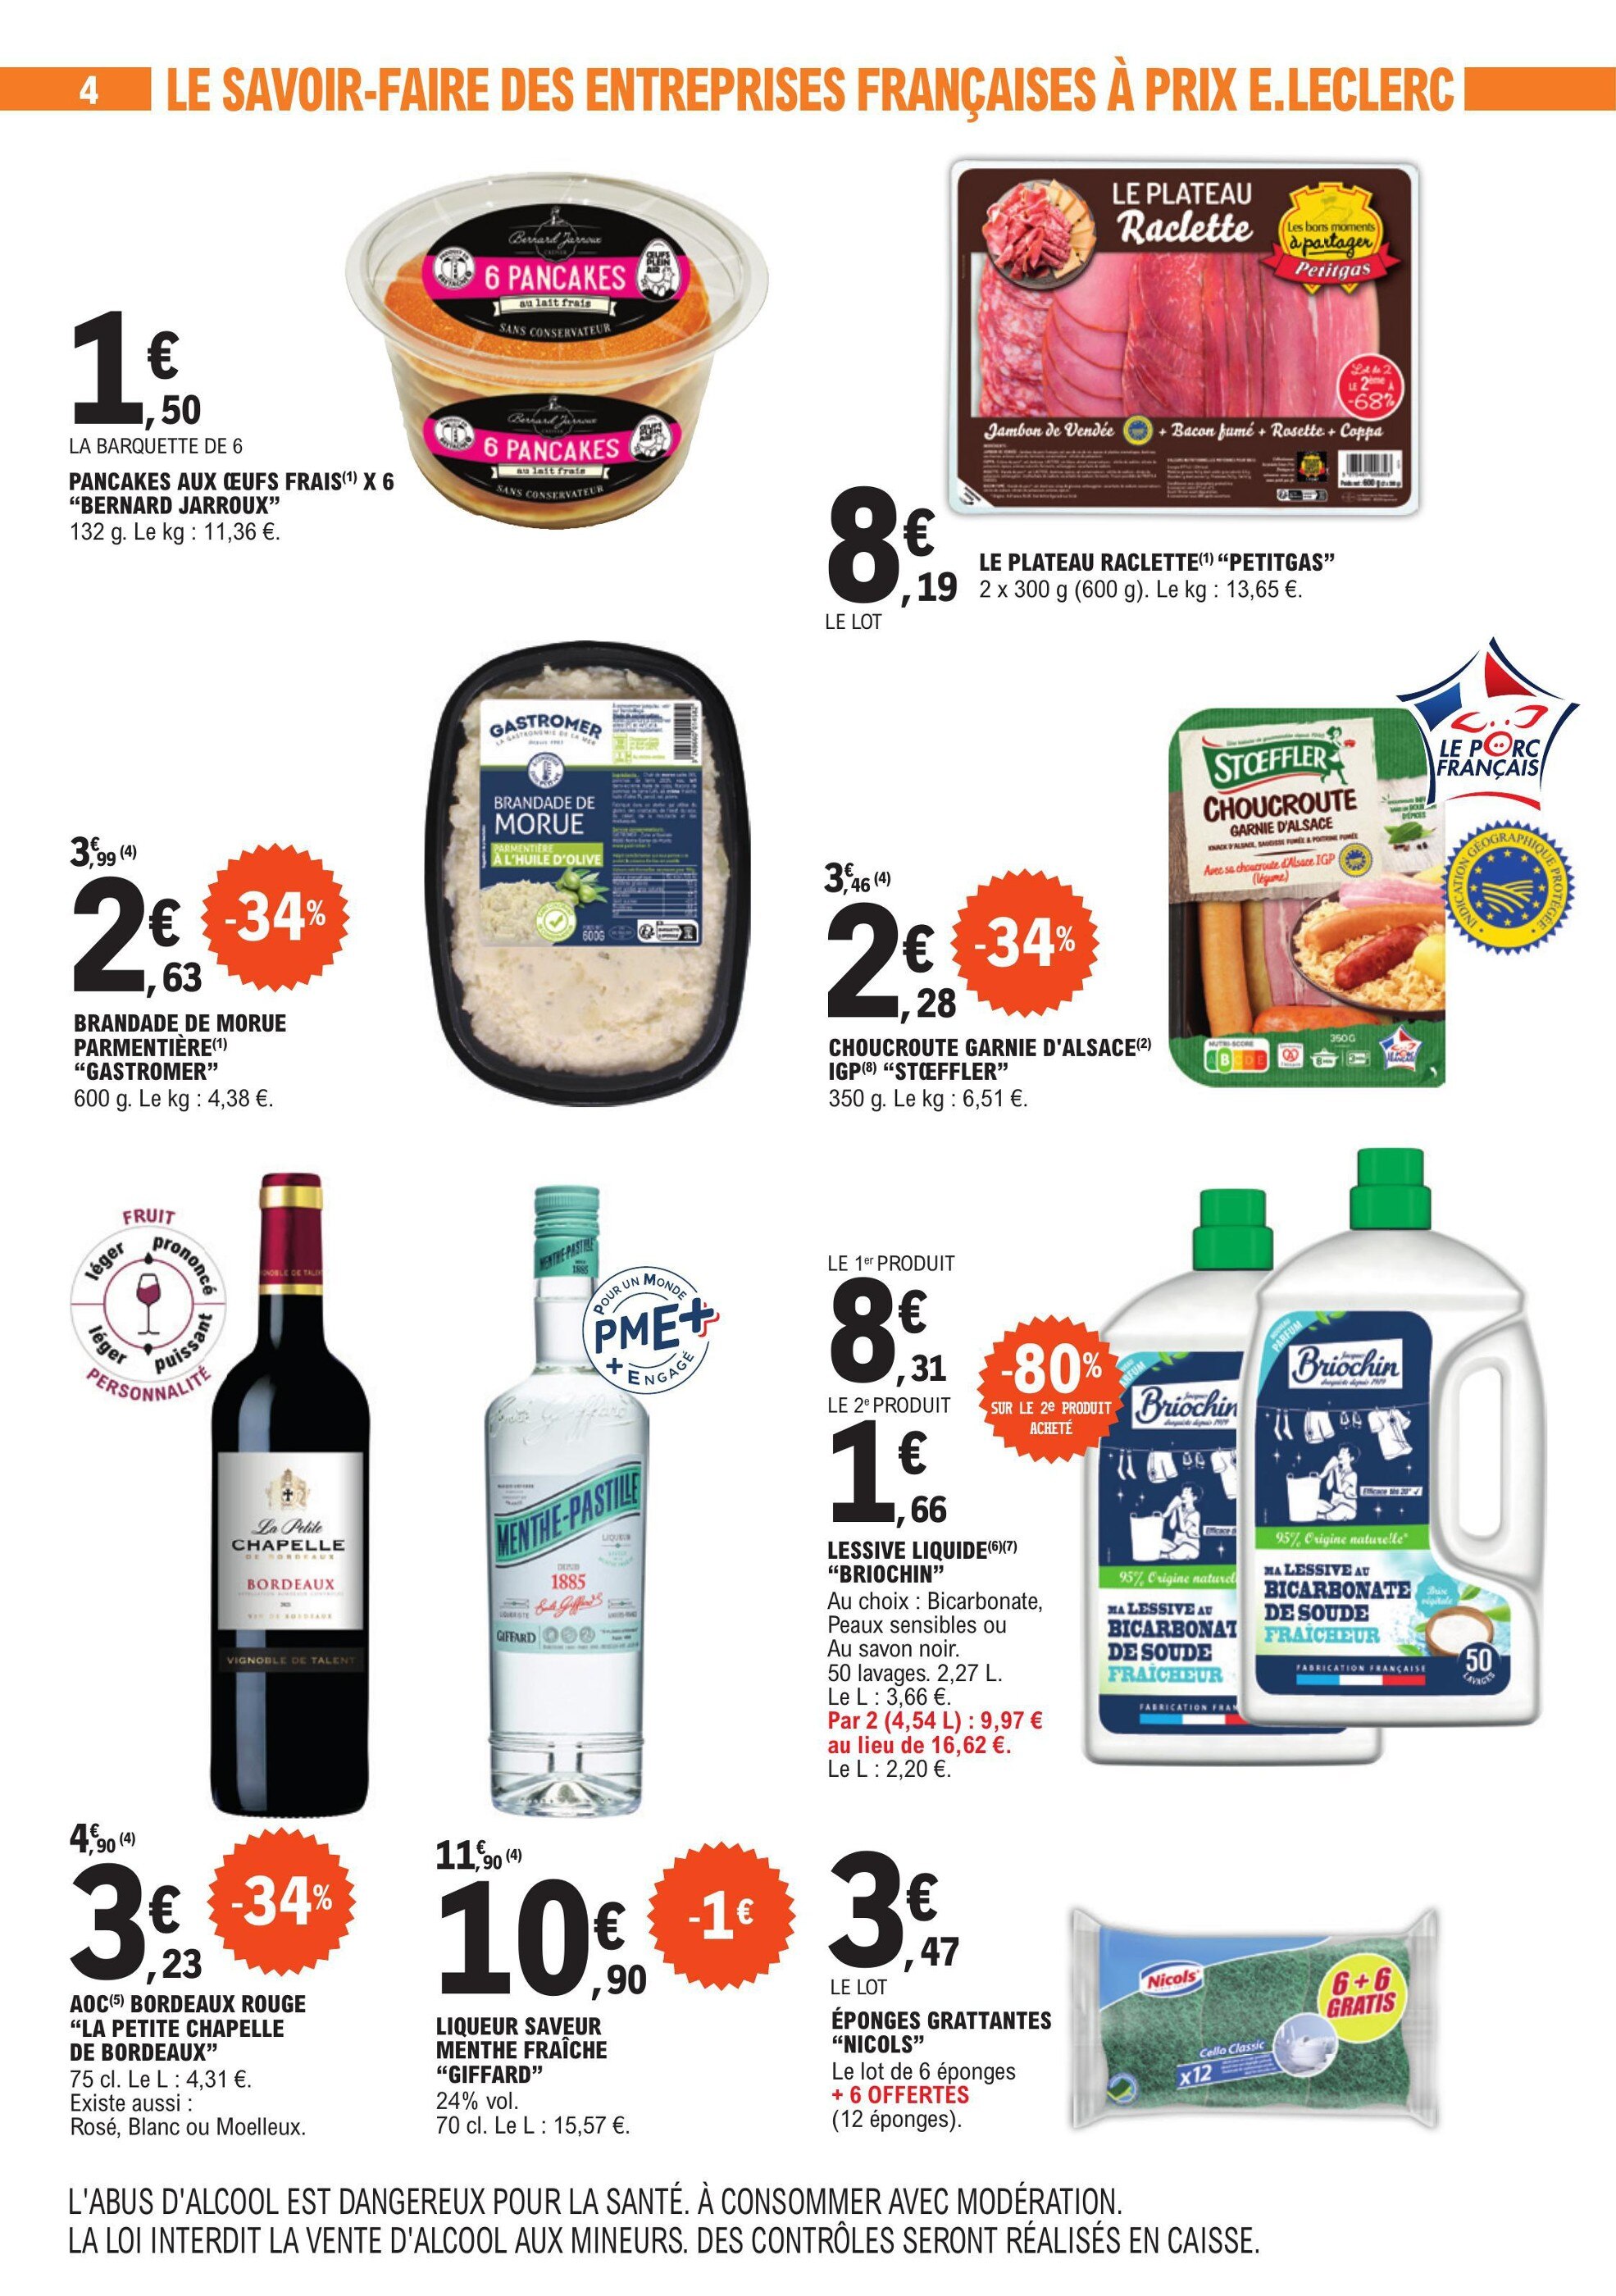 Lessive Capsules Carrefour Market ᐅ Promos et prix dans le catalogue de la  semaine